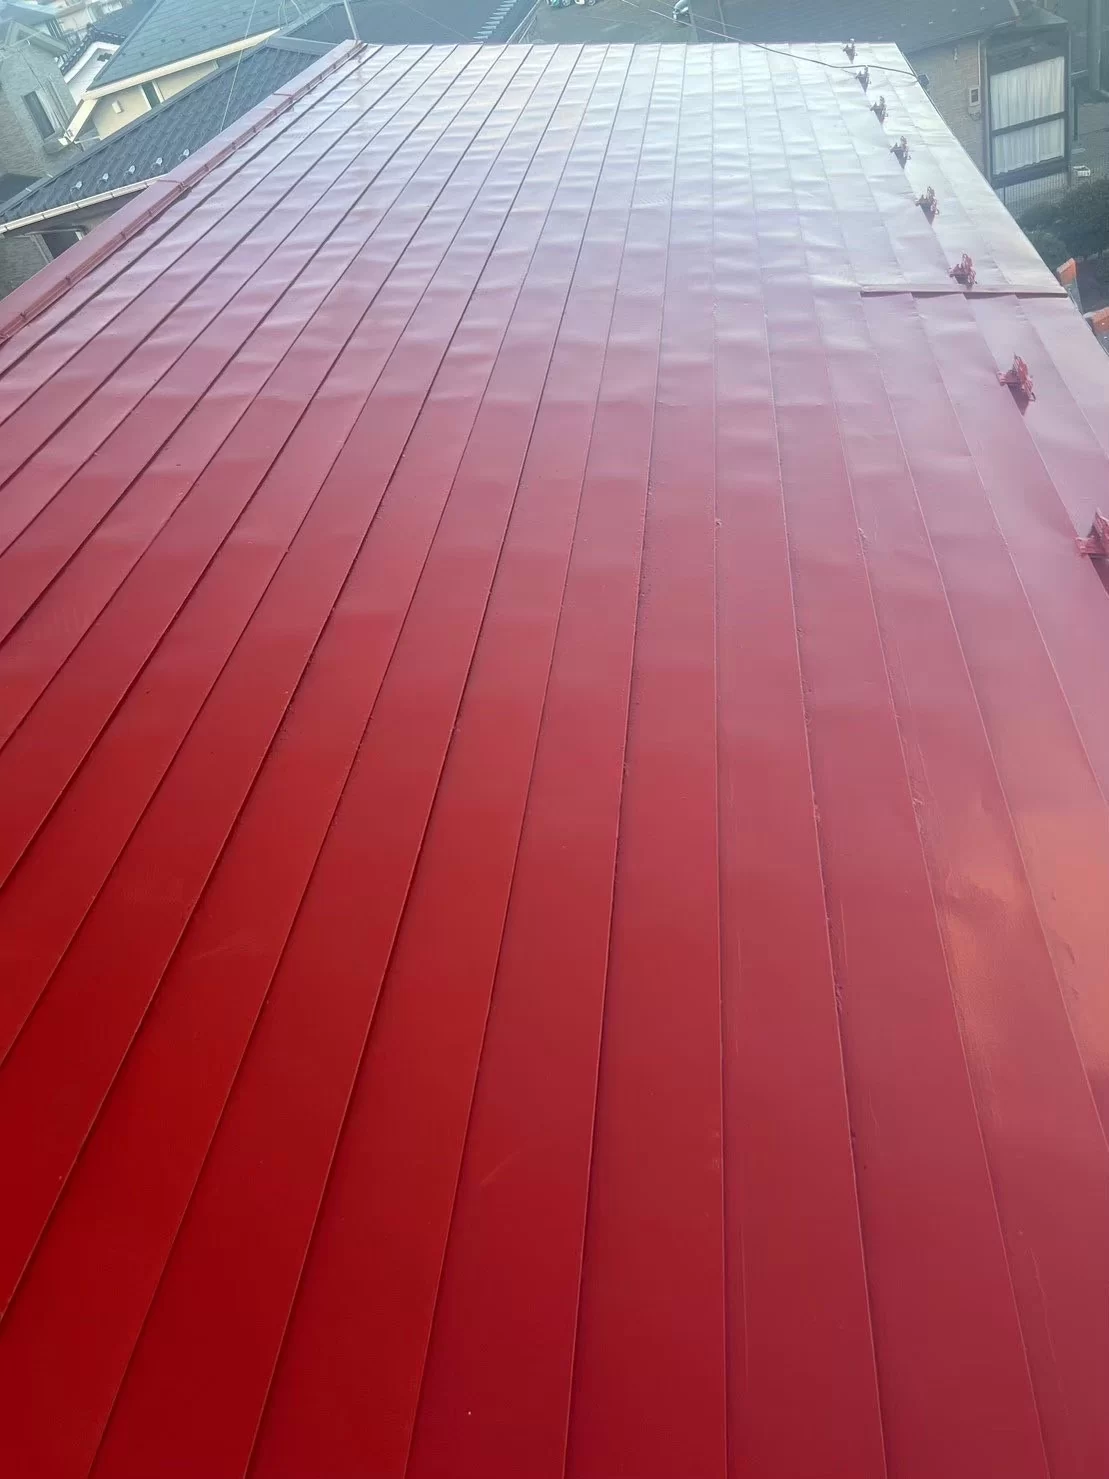 埼玉県越谷市で屋根塗装を行いました